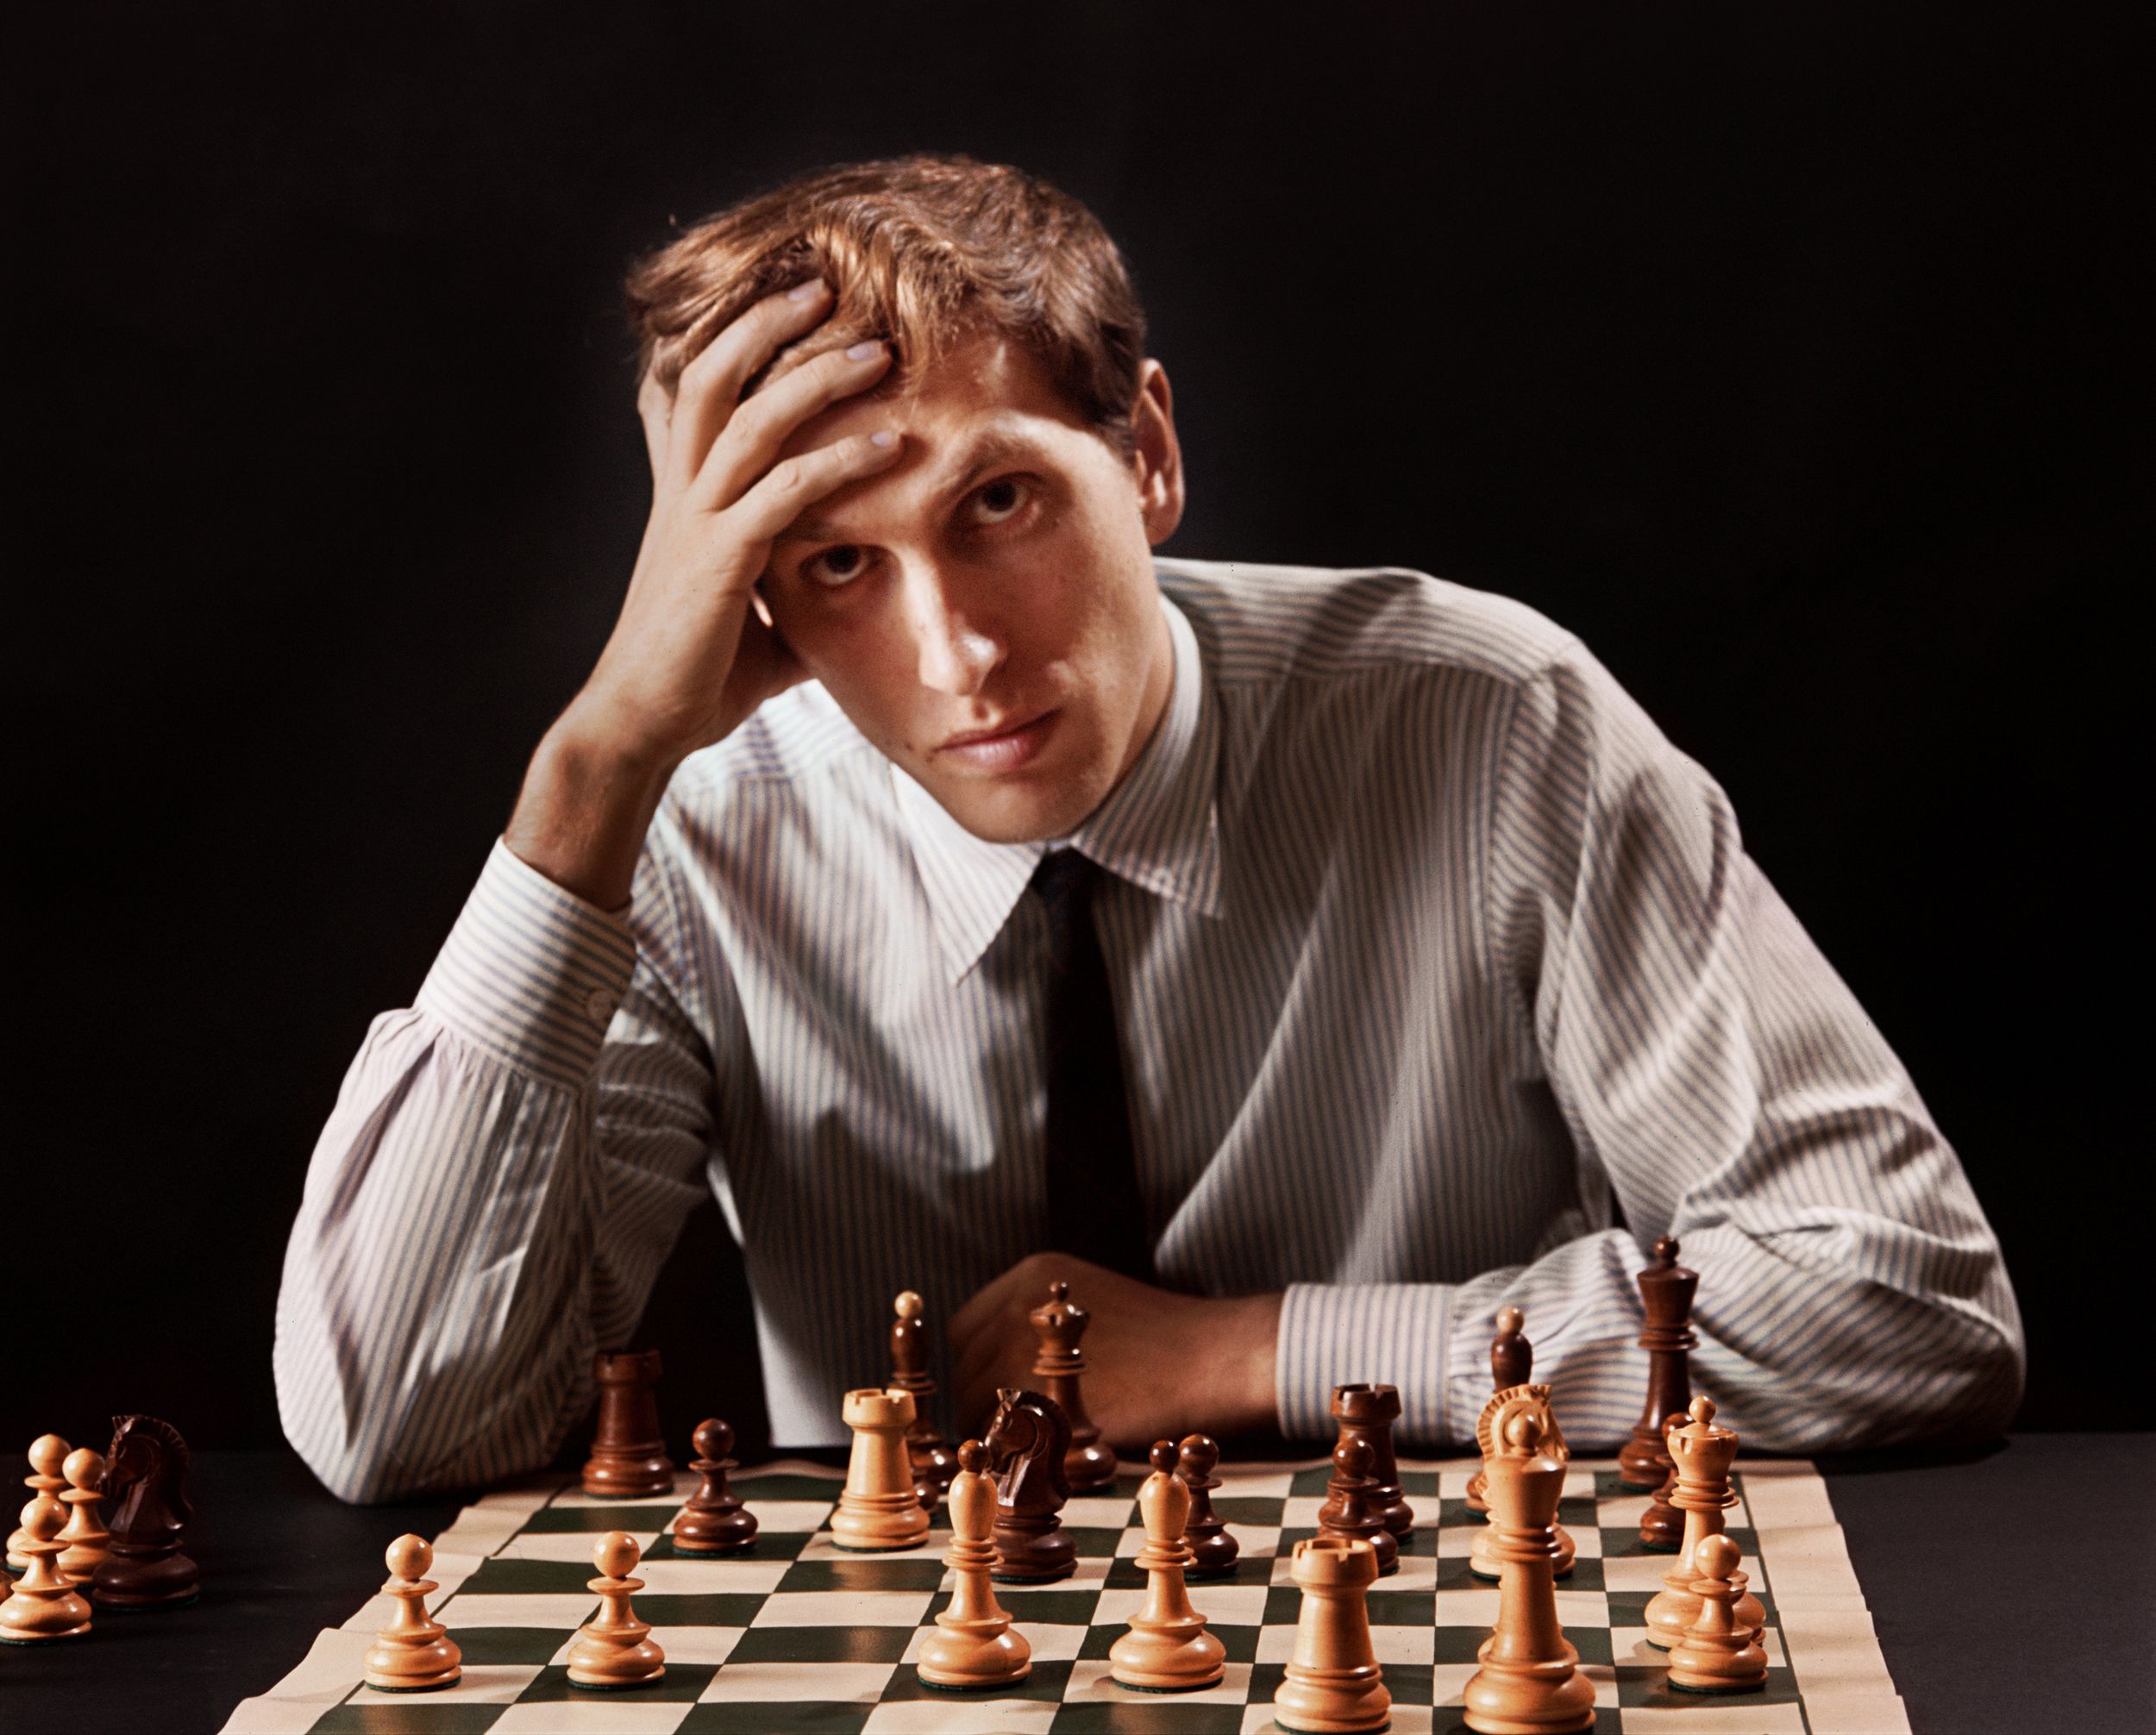 Bobby Fischer em Cuba - M. A. Sanchez e J. Suarez